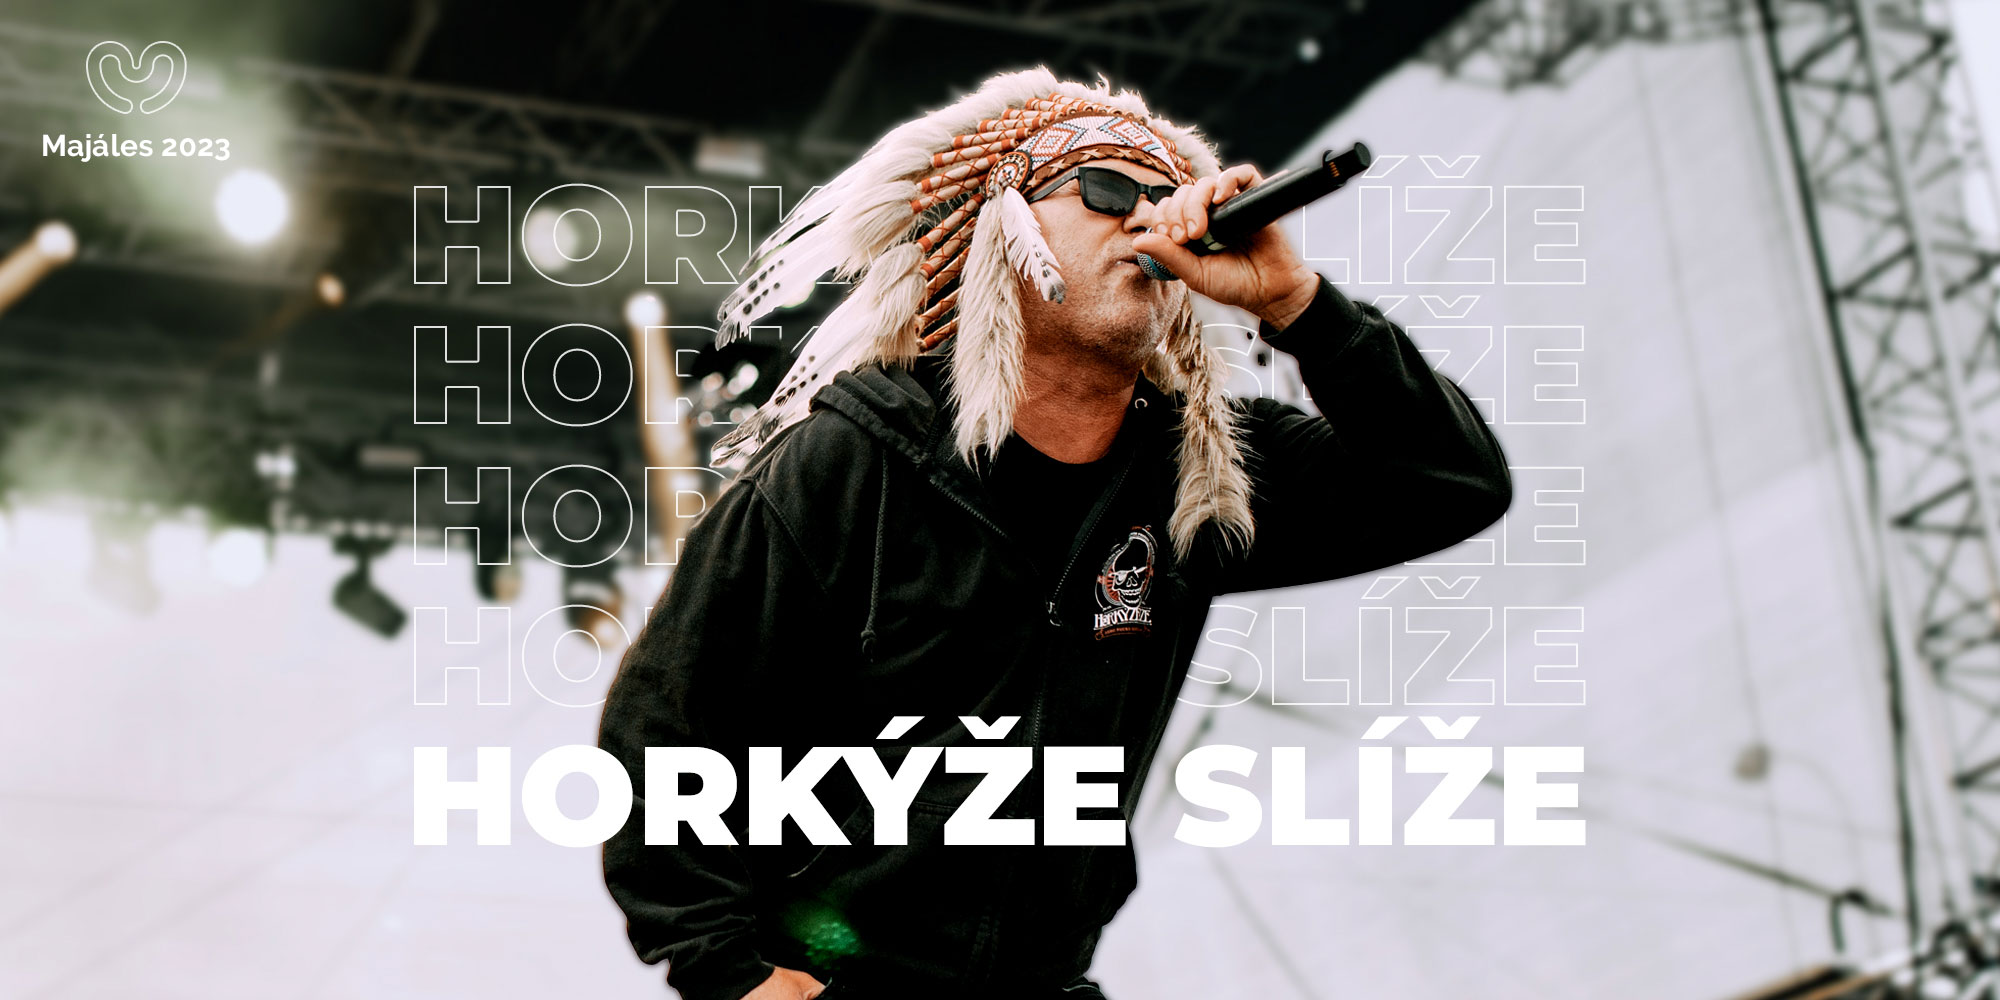 an23-horkyze-slize